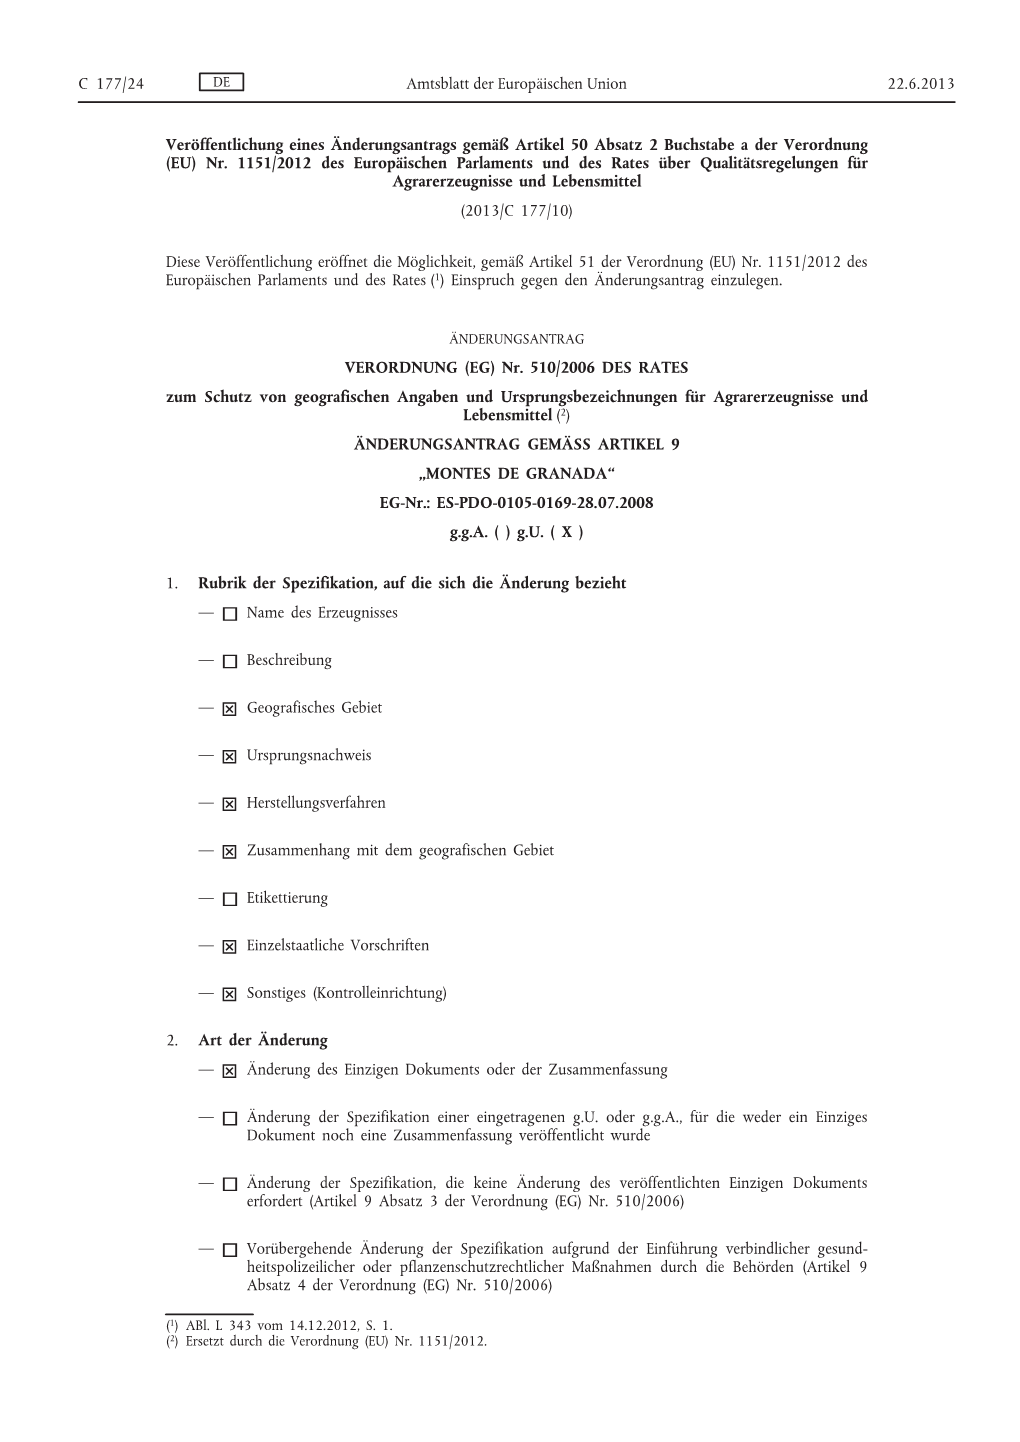 EU) Nr. 1151/2012 Des Europäischen Parlaments Und Des Rates Über Qualitätsregelungen Für Agrarerzeugnisse Und Lebensmittel (2013/C 177/10